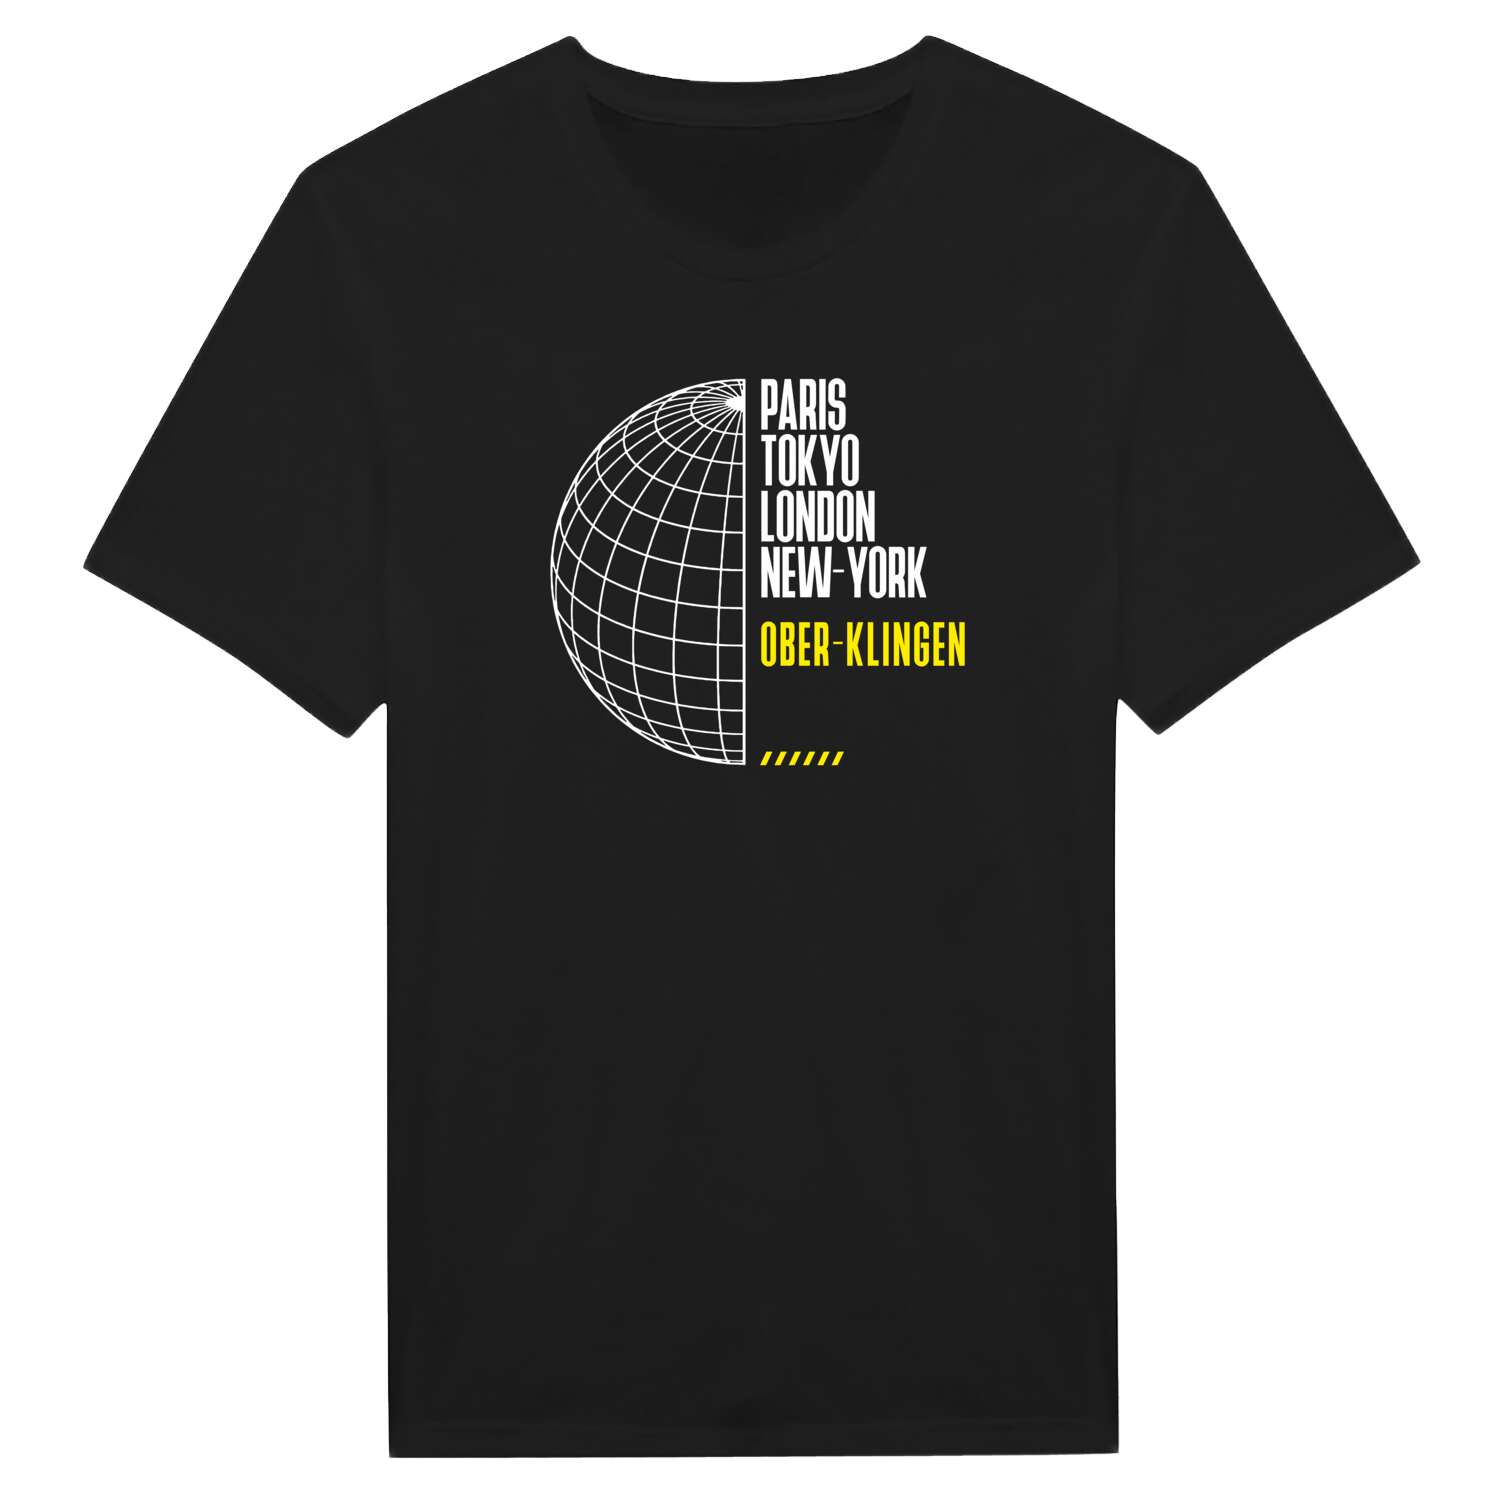 Ober-Klingen T-Shirt »Paris Tokyo London«